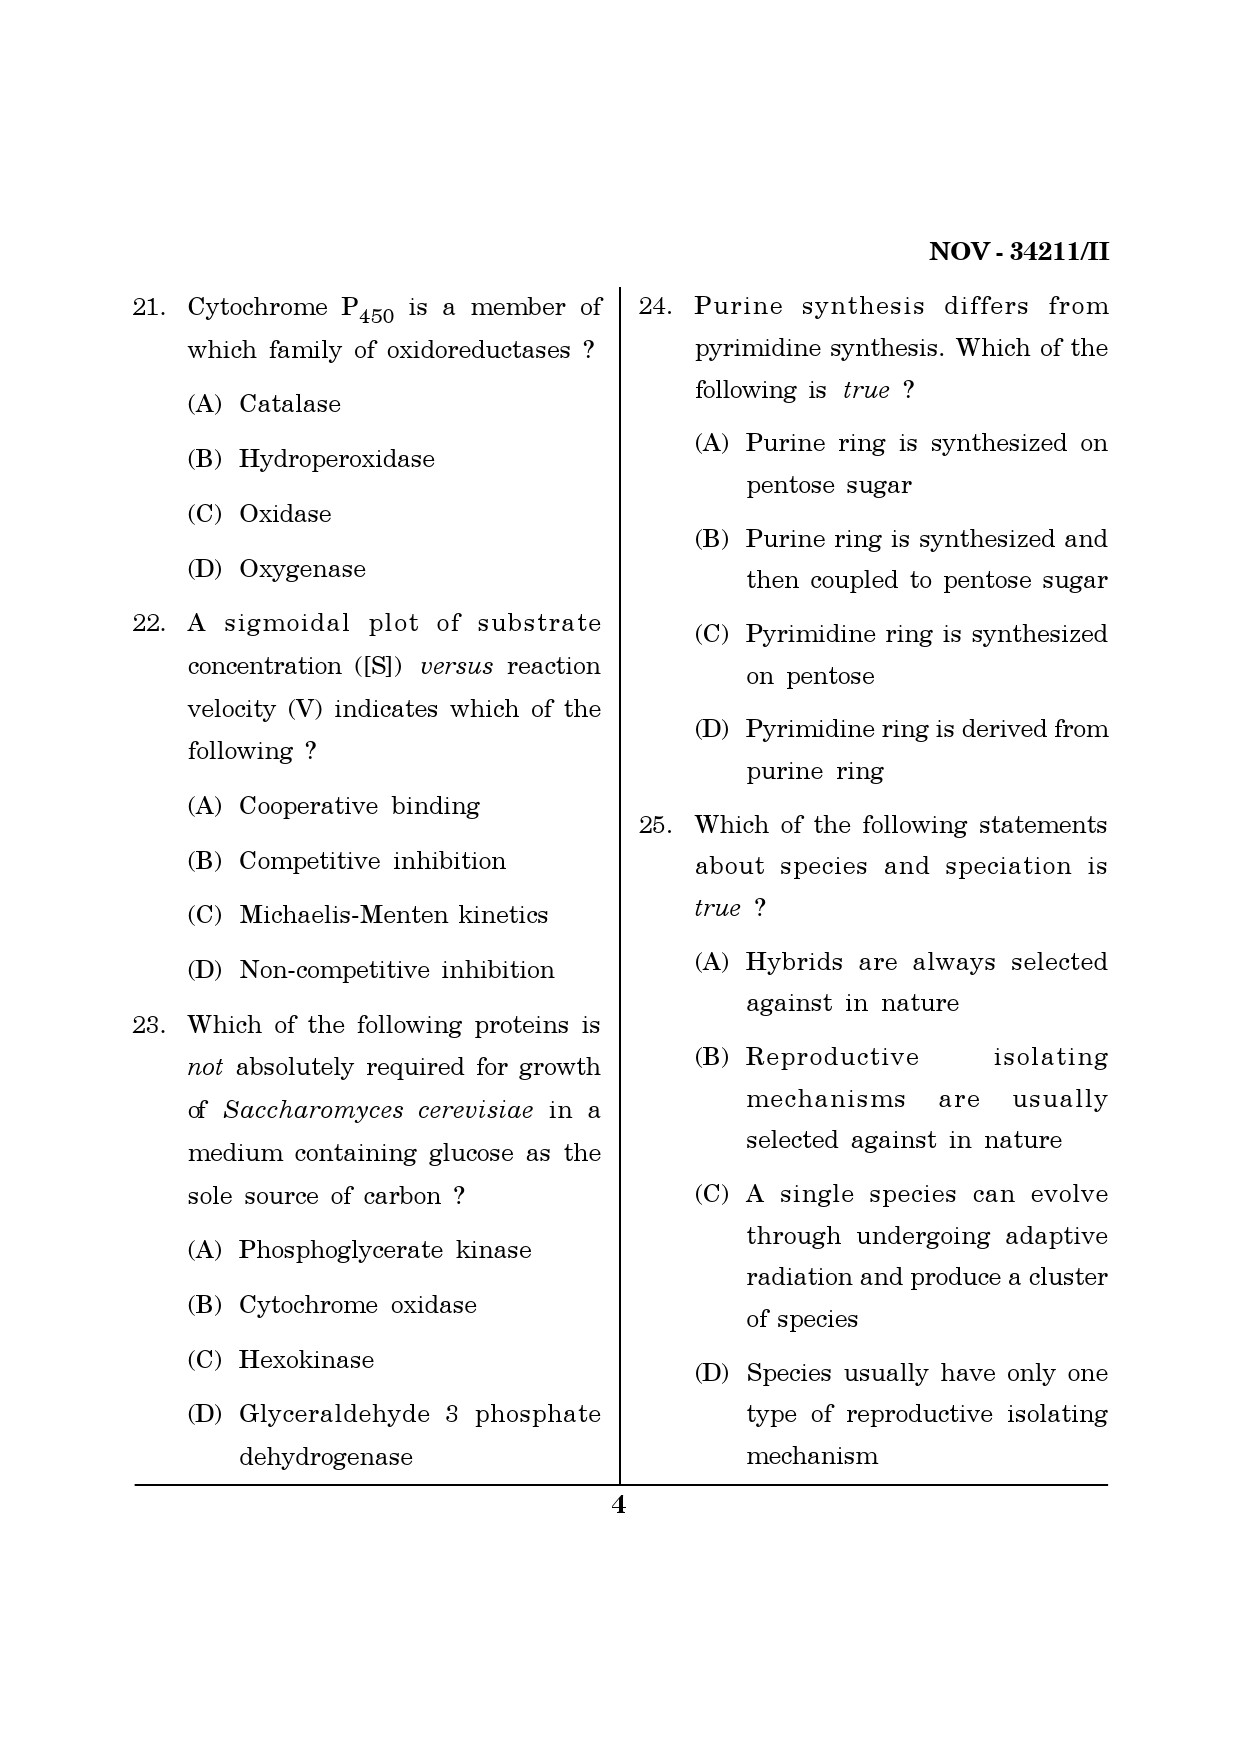 Maharashtra SET Life Sciences Question Paper II November 2011 4